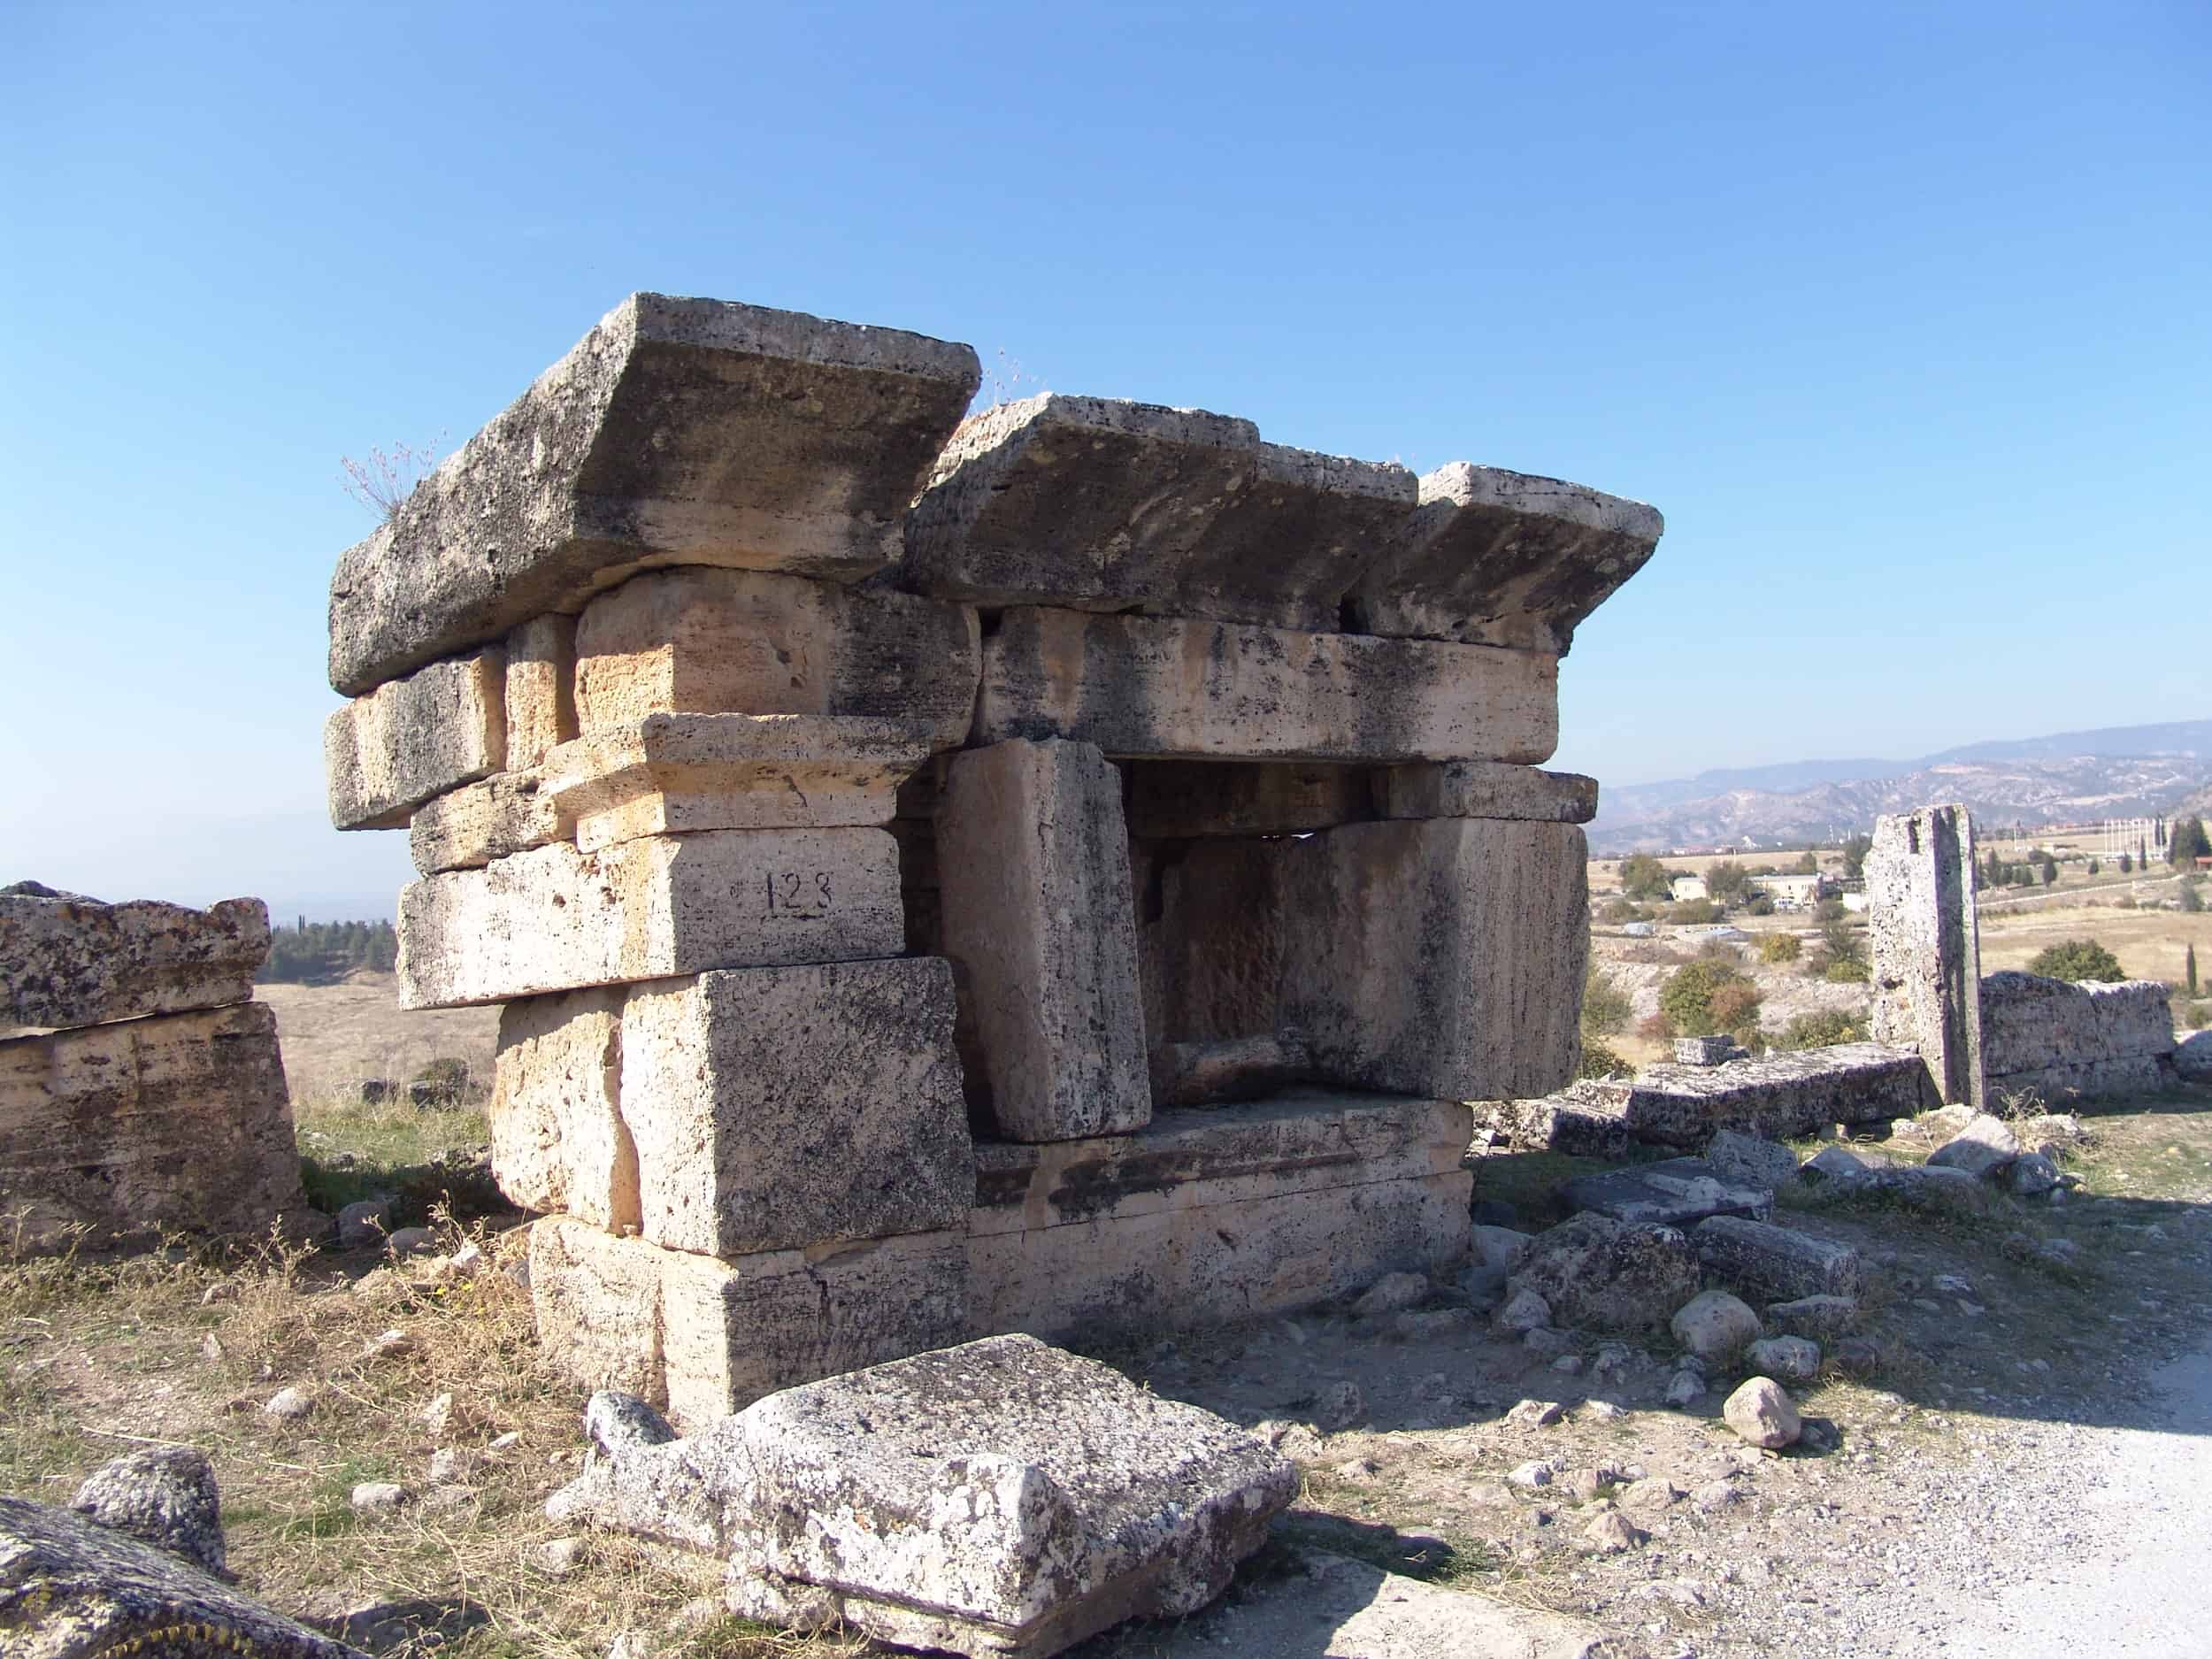 Tomb 123 at the Hierapolis Necropolis